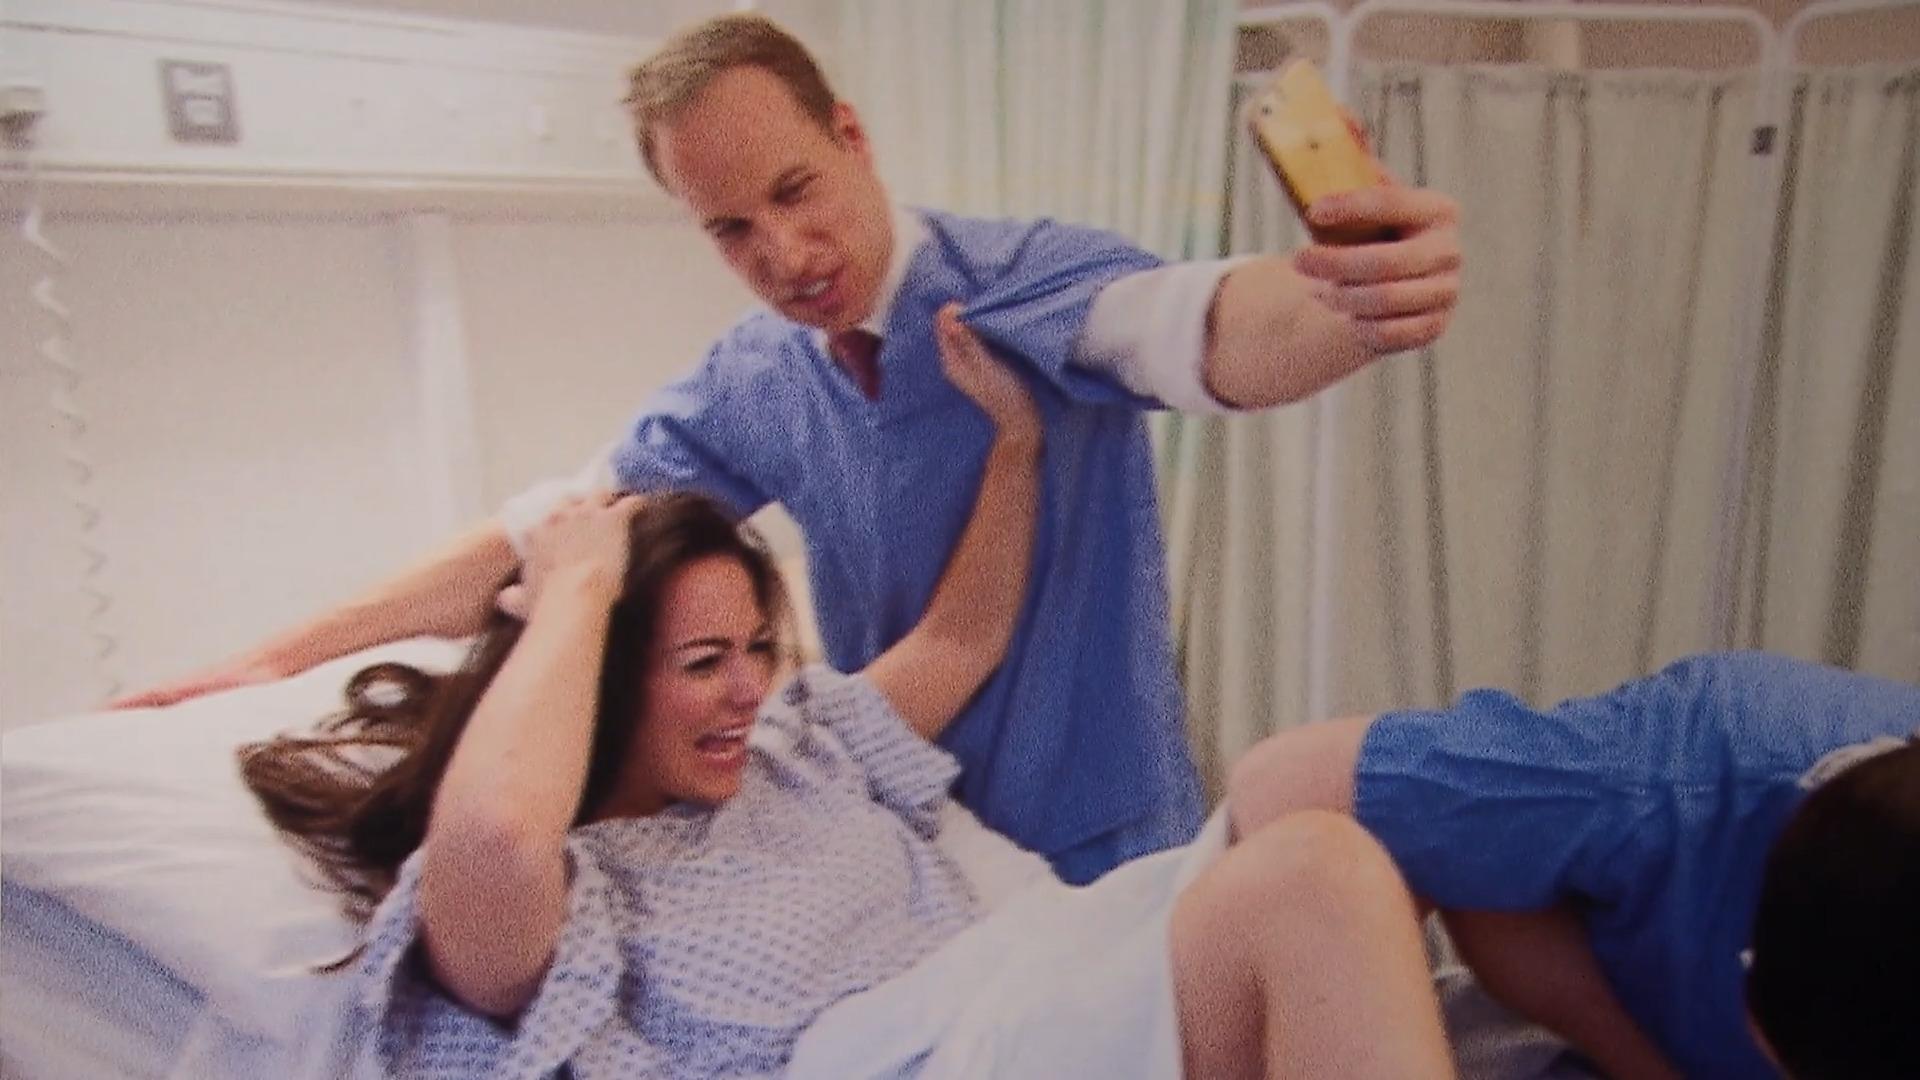 Fotografiert hier Prinz William seine Kate bei der Geburt? Zum Verwechseln ähnlich